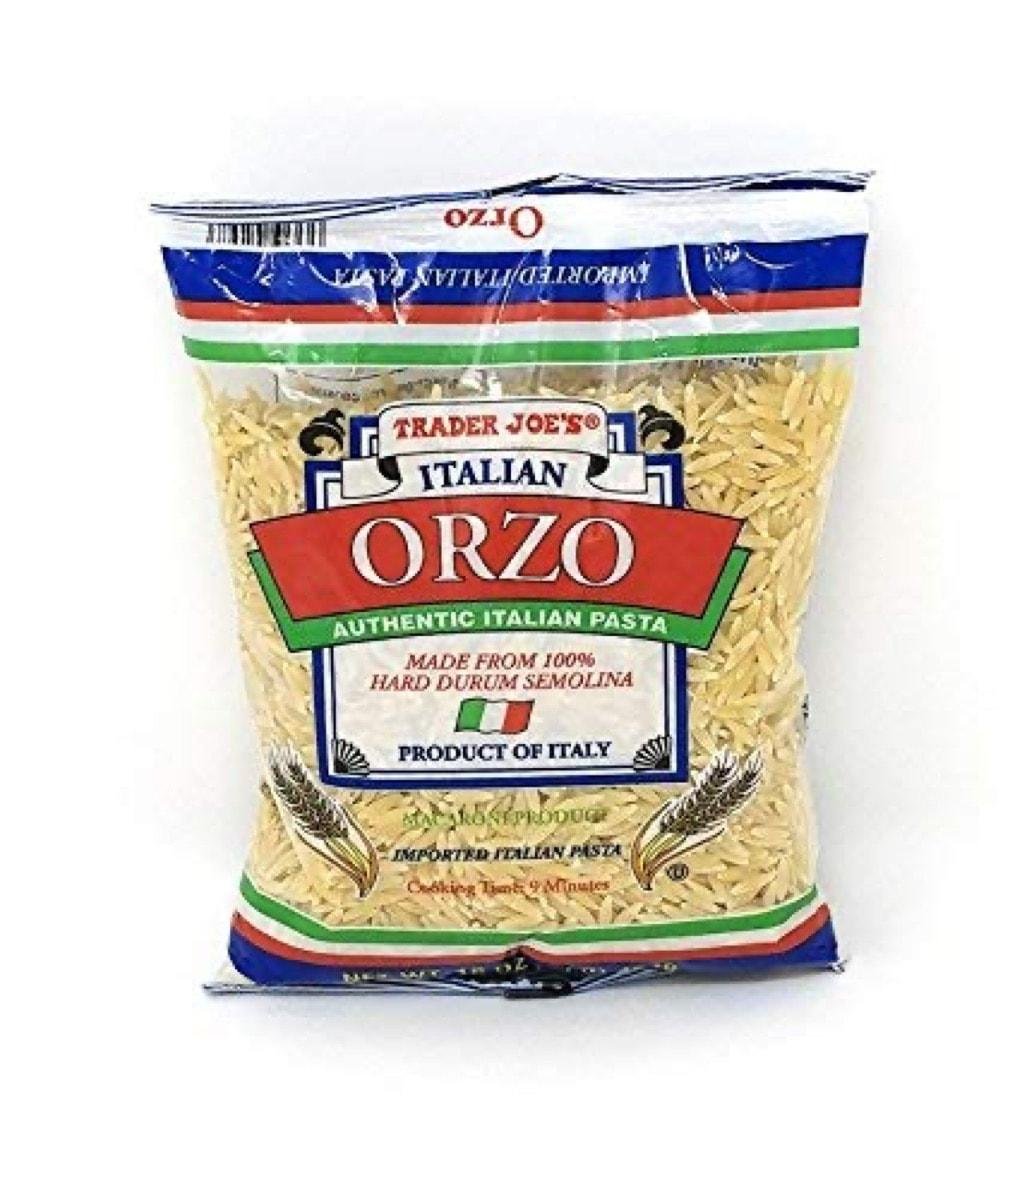 Trader Joe’s Orzo pasta